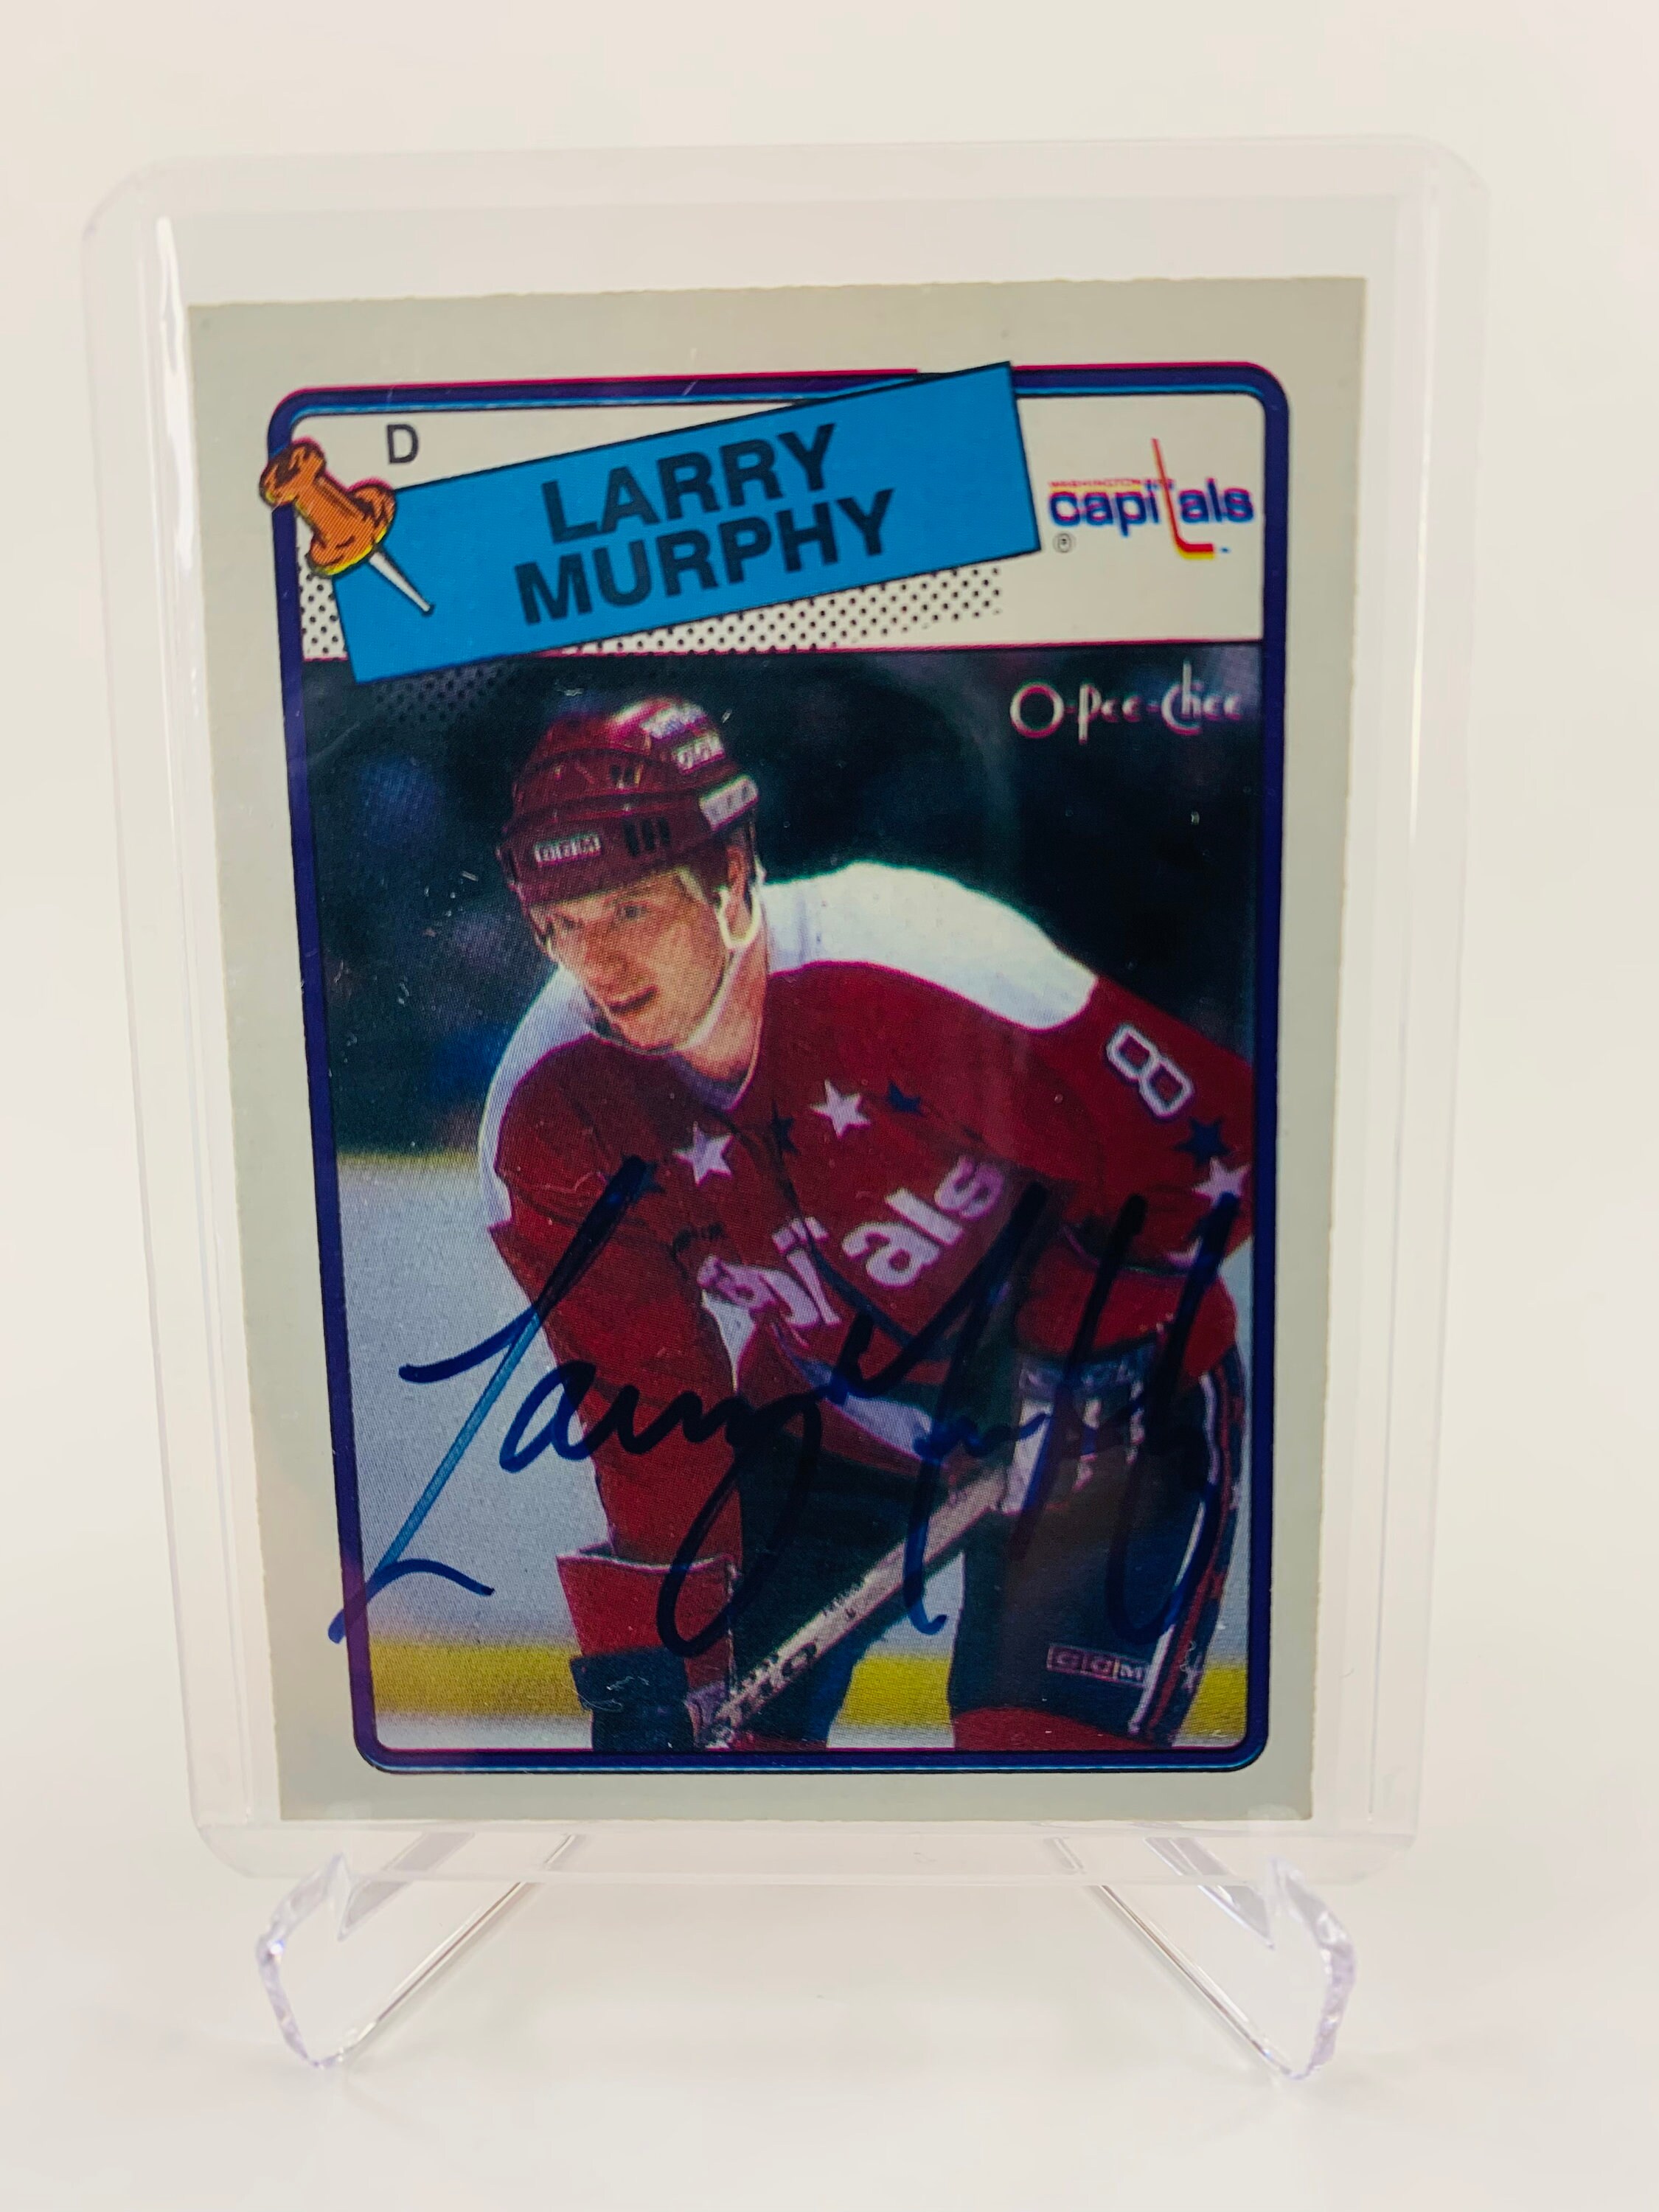 Larry Murphy Autographed Photograph - 8x10